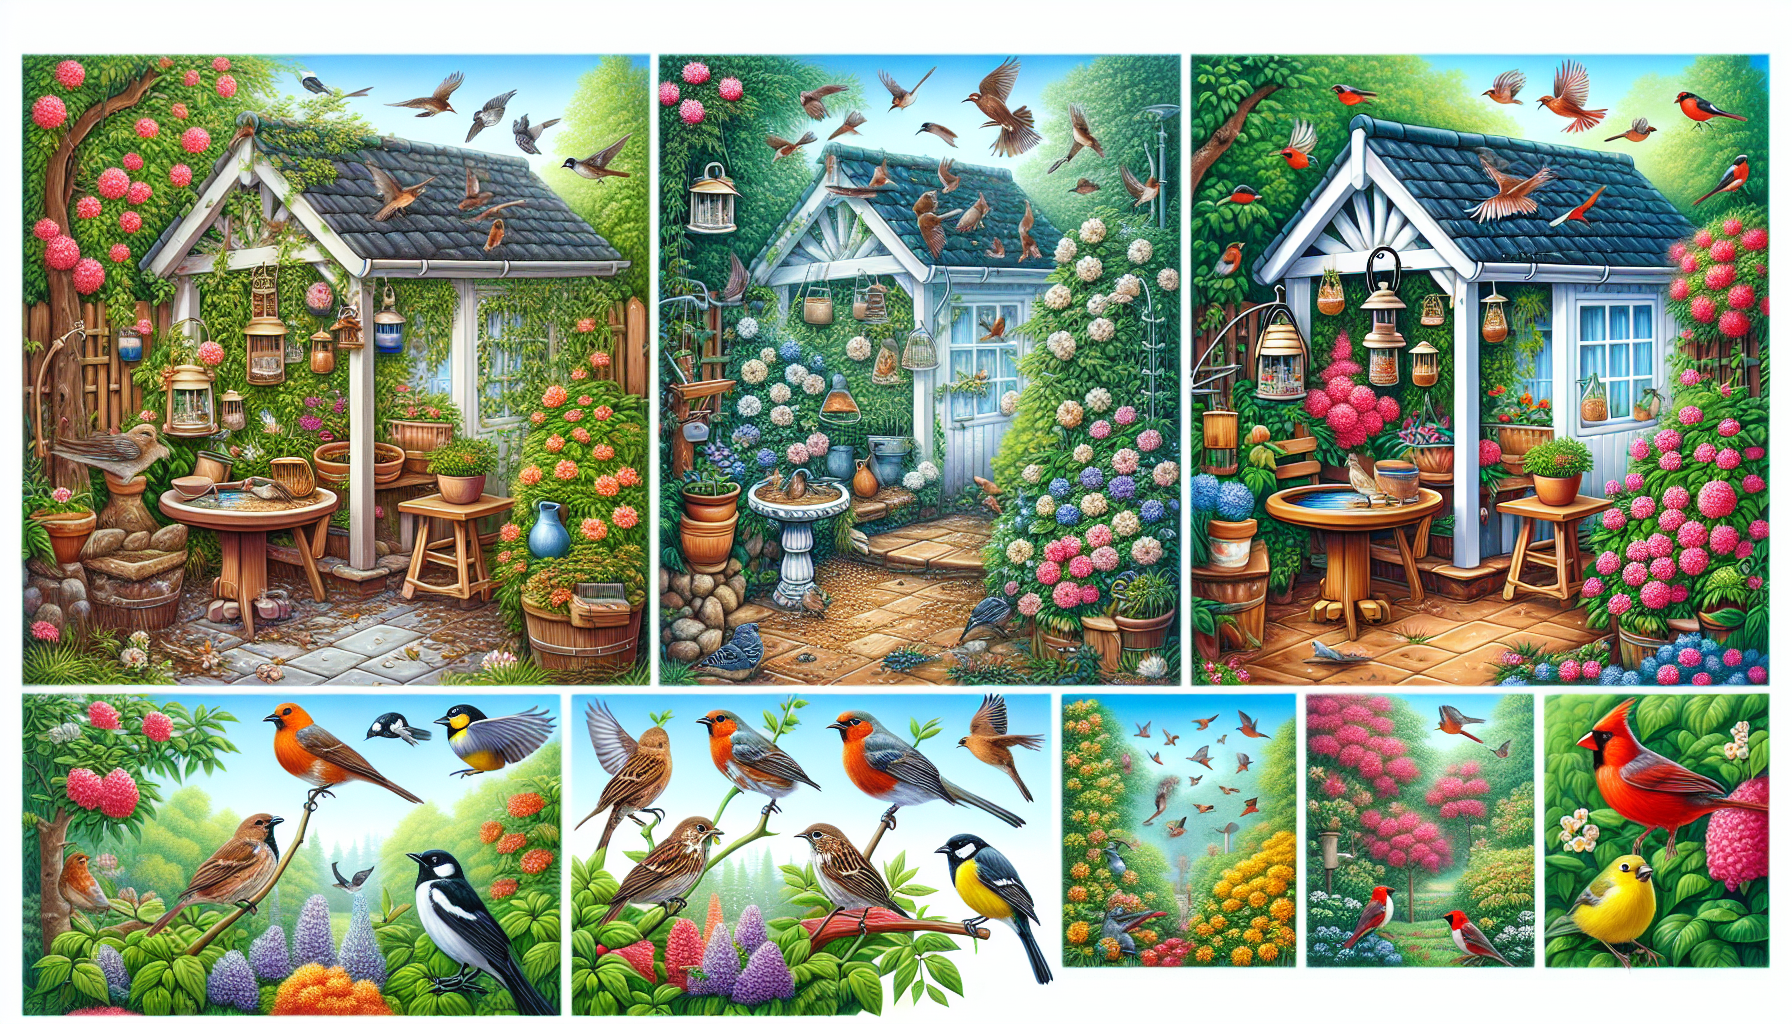 ¡Atrae más pájaros a tu jardín con nuestros consejos de expertos! transforme su jardín en un paraíso para los amantes de las aves y disfrute de la vista y el sonido de los visitantes emplumados.